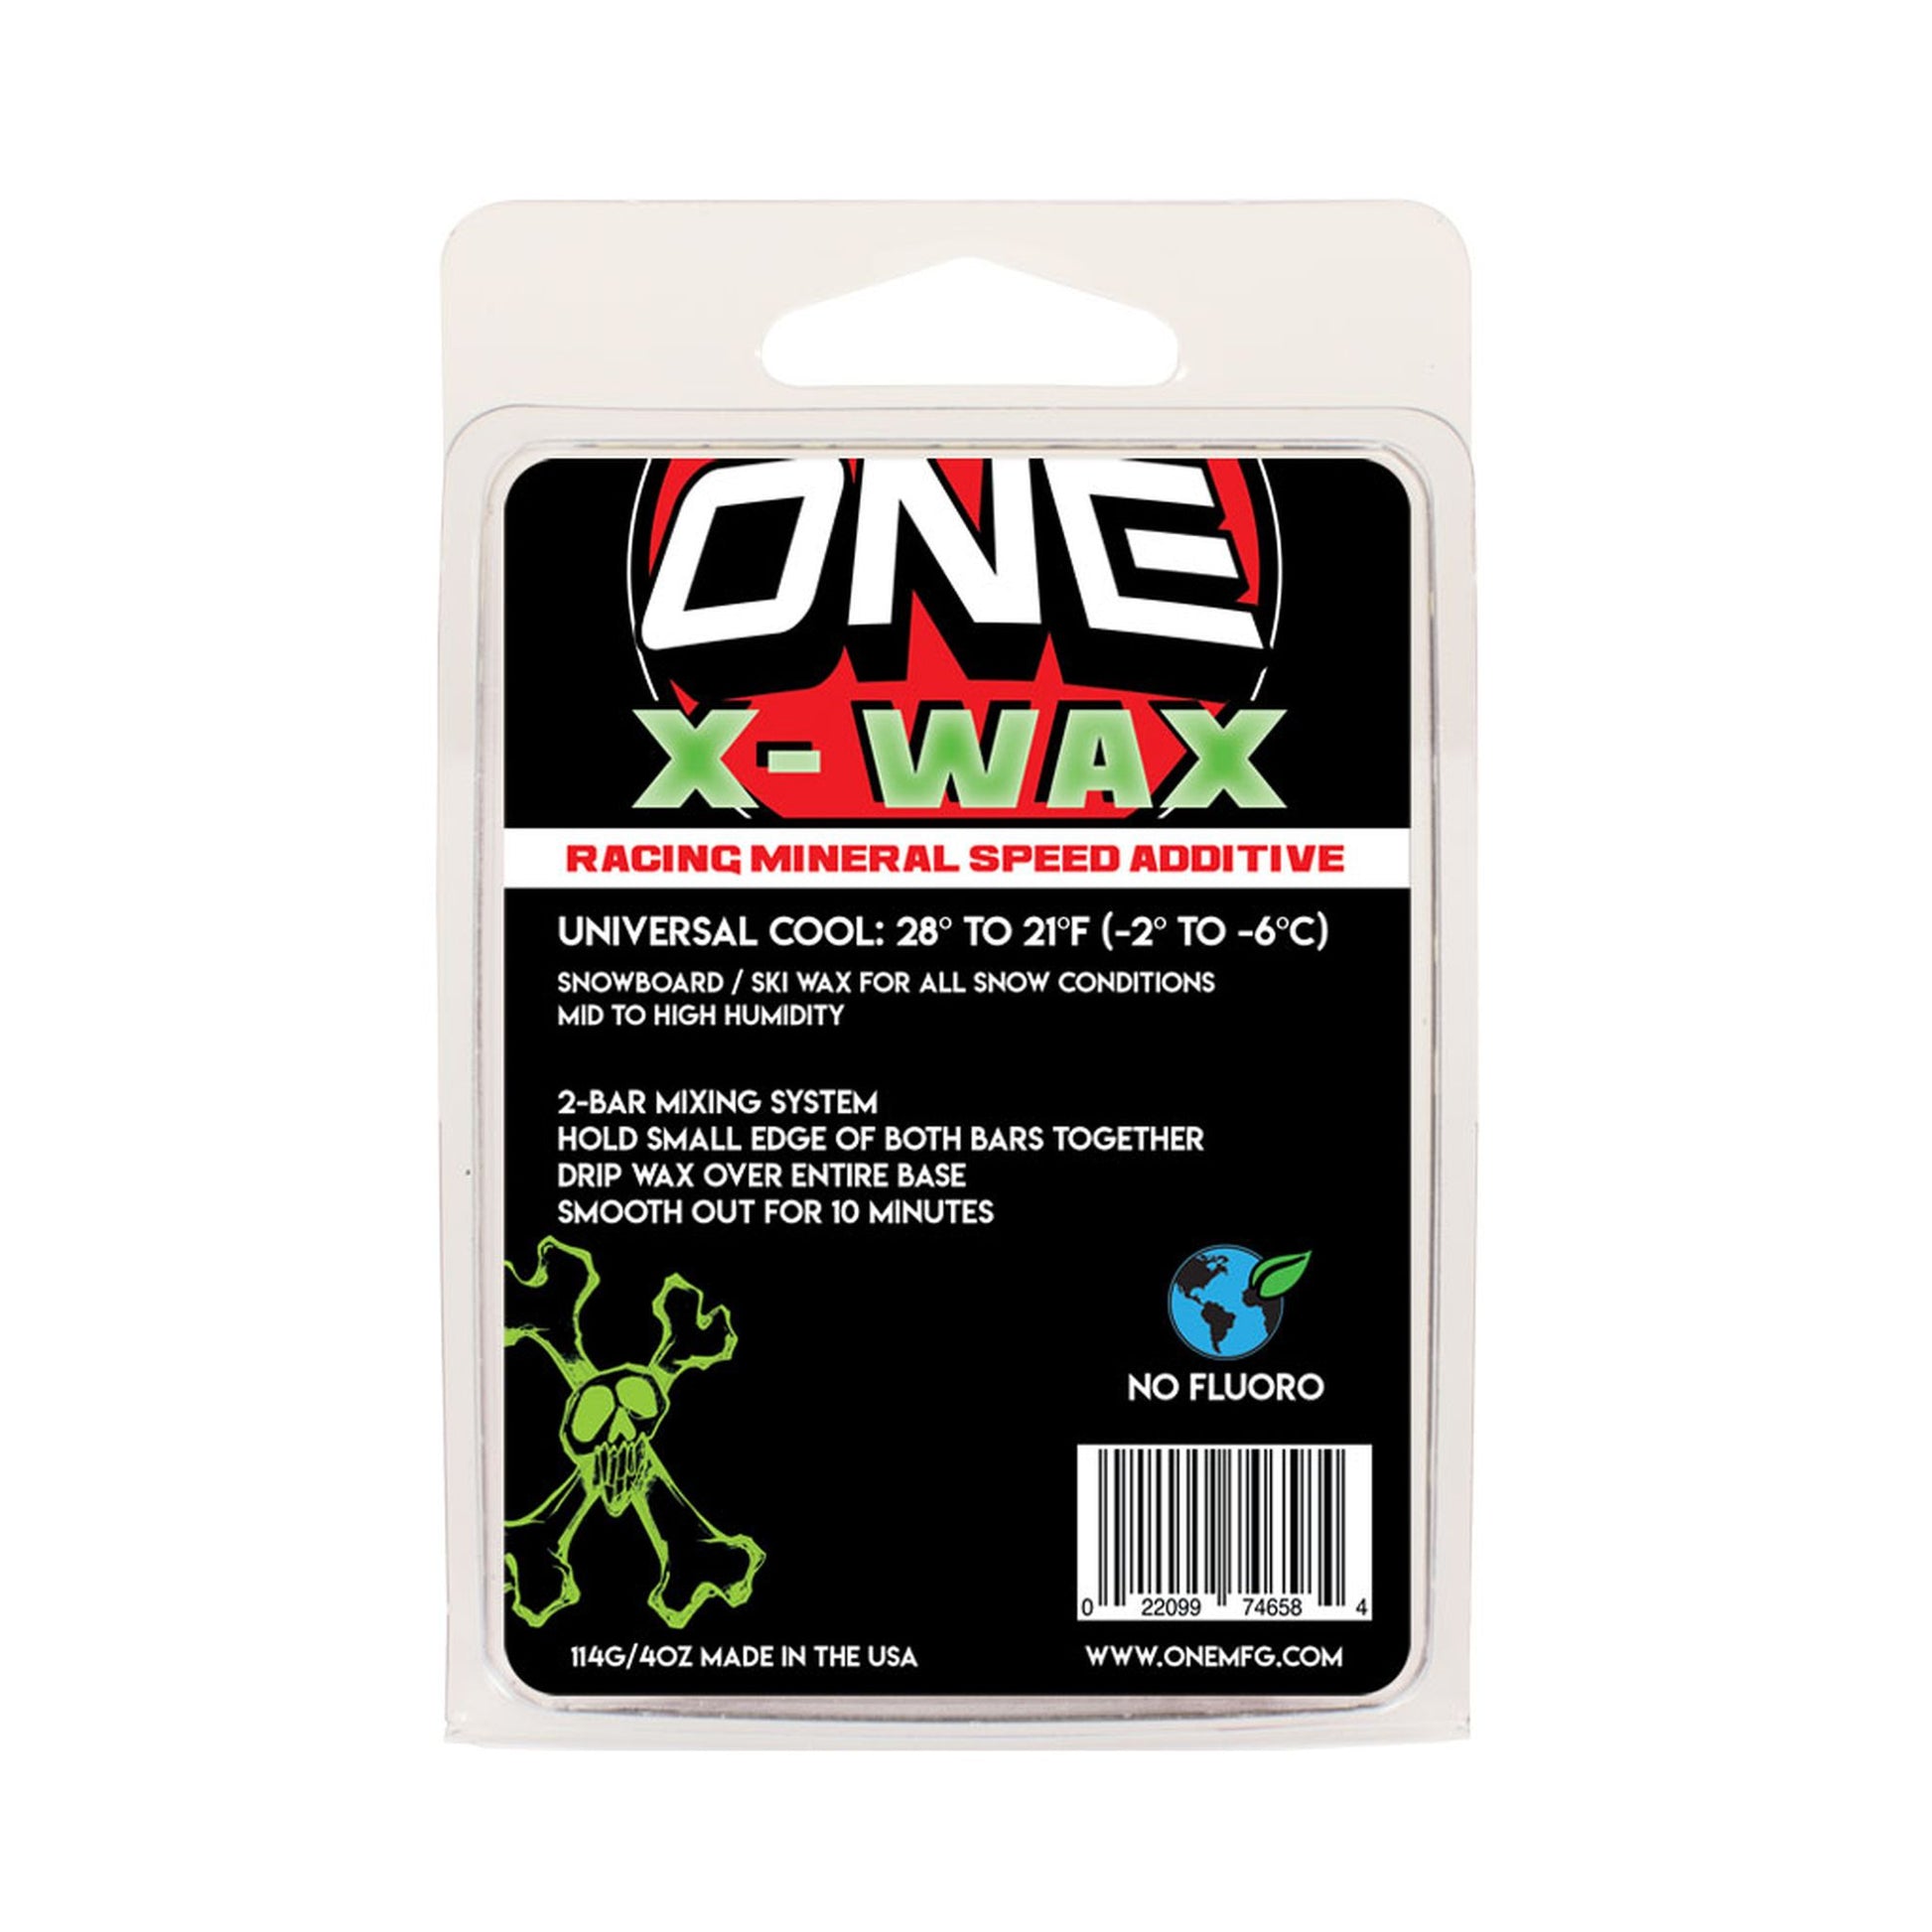 Oneball X-Wax 110g Snow Wax COOL - 28F to 21F 110 Wax